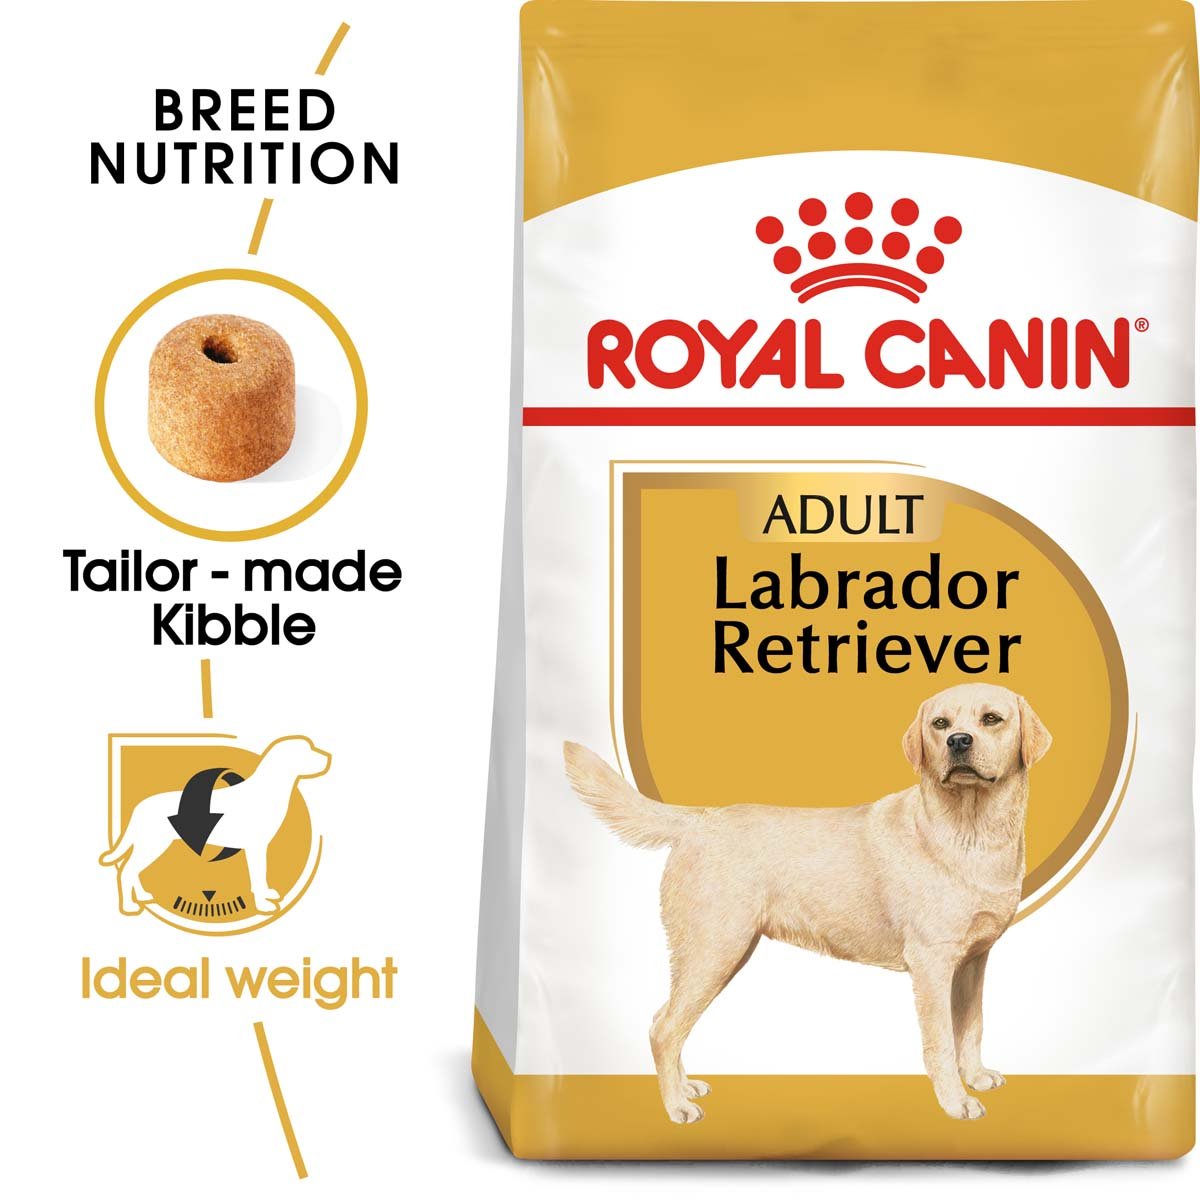 ROYAL CANIN Labrador Retriever 12 kg